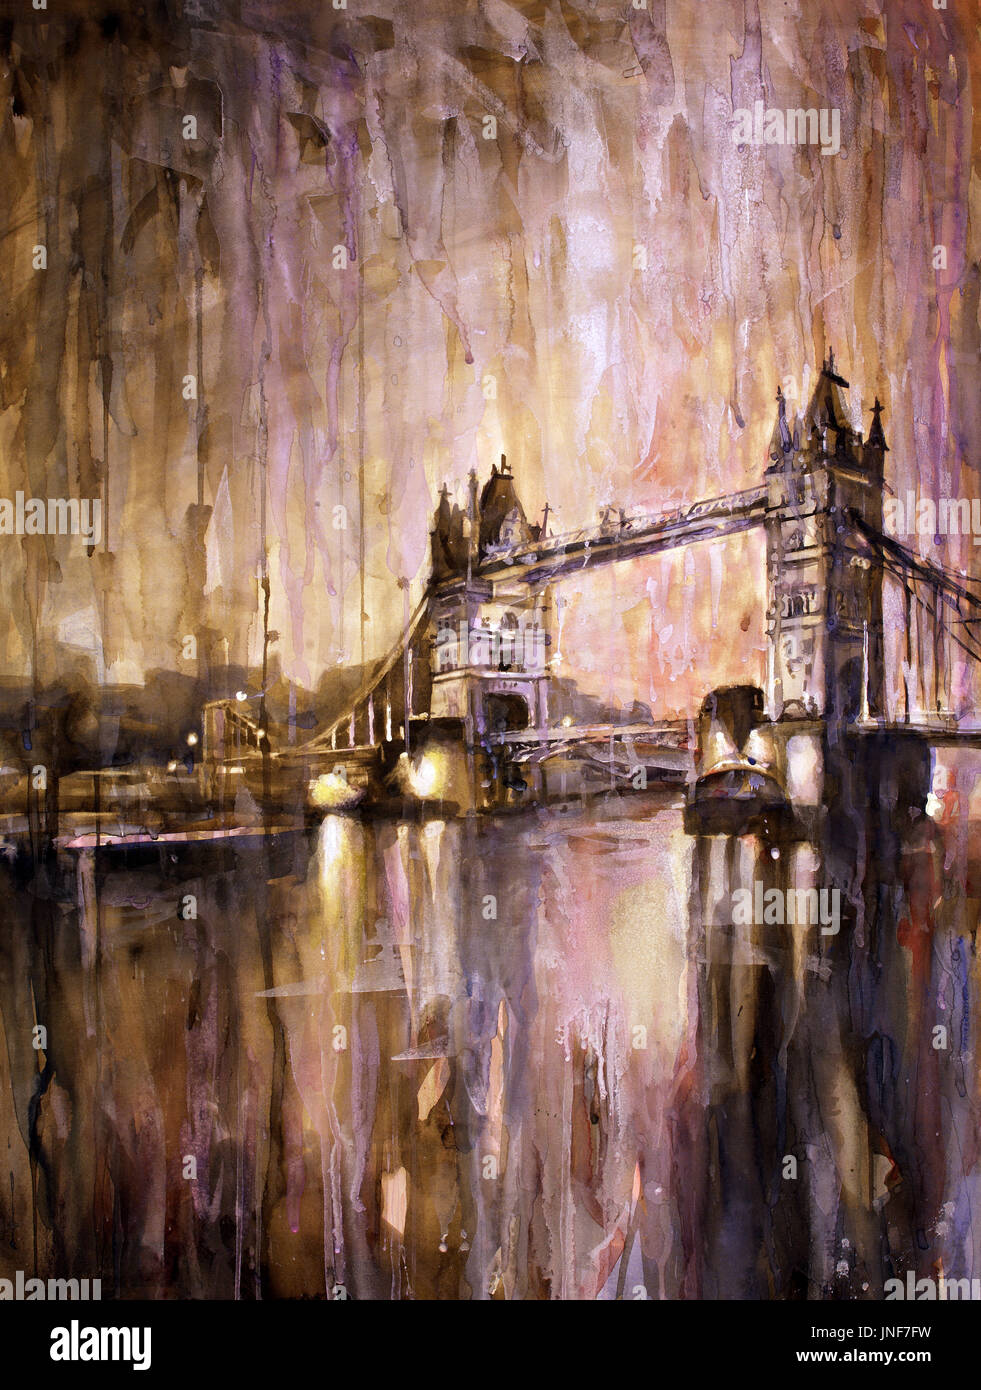 Aquarell von der Tower Bridge in der Dämmerung - London, England. Malerei von der Tower Bridge über die Themse in London, UK. London Art. Stockfoto